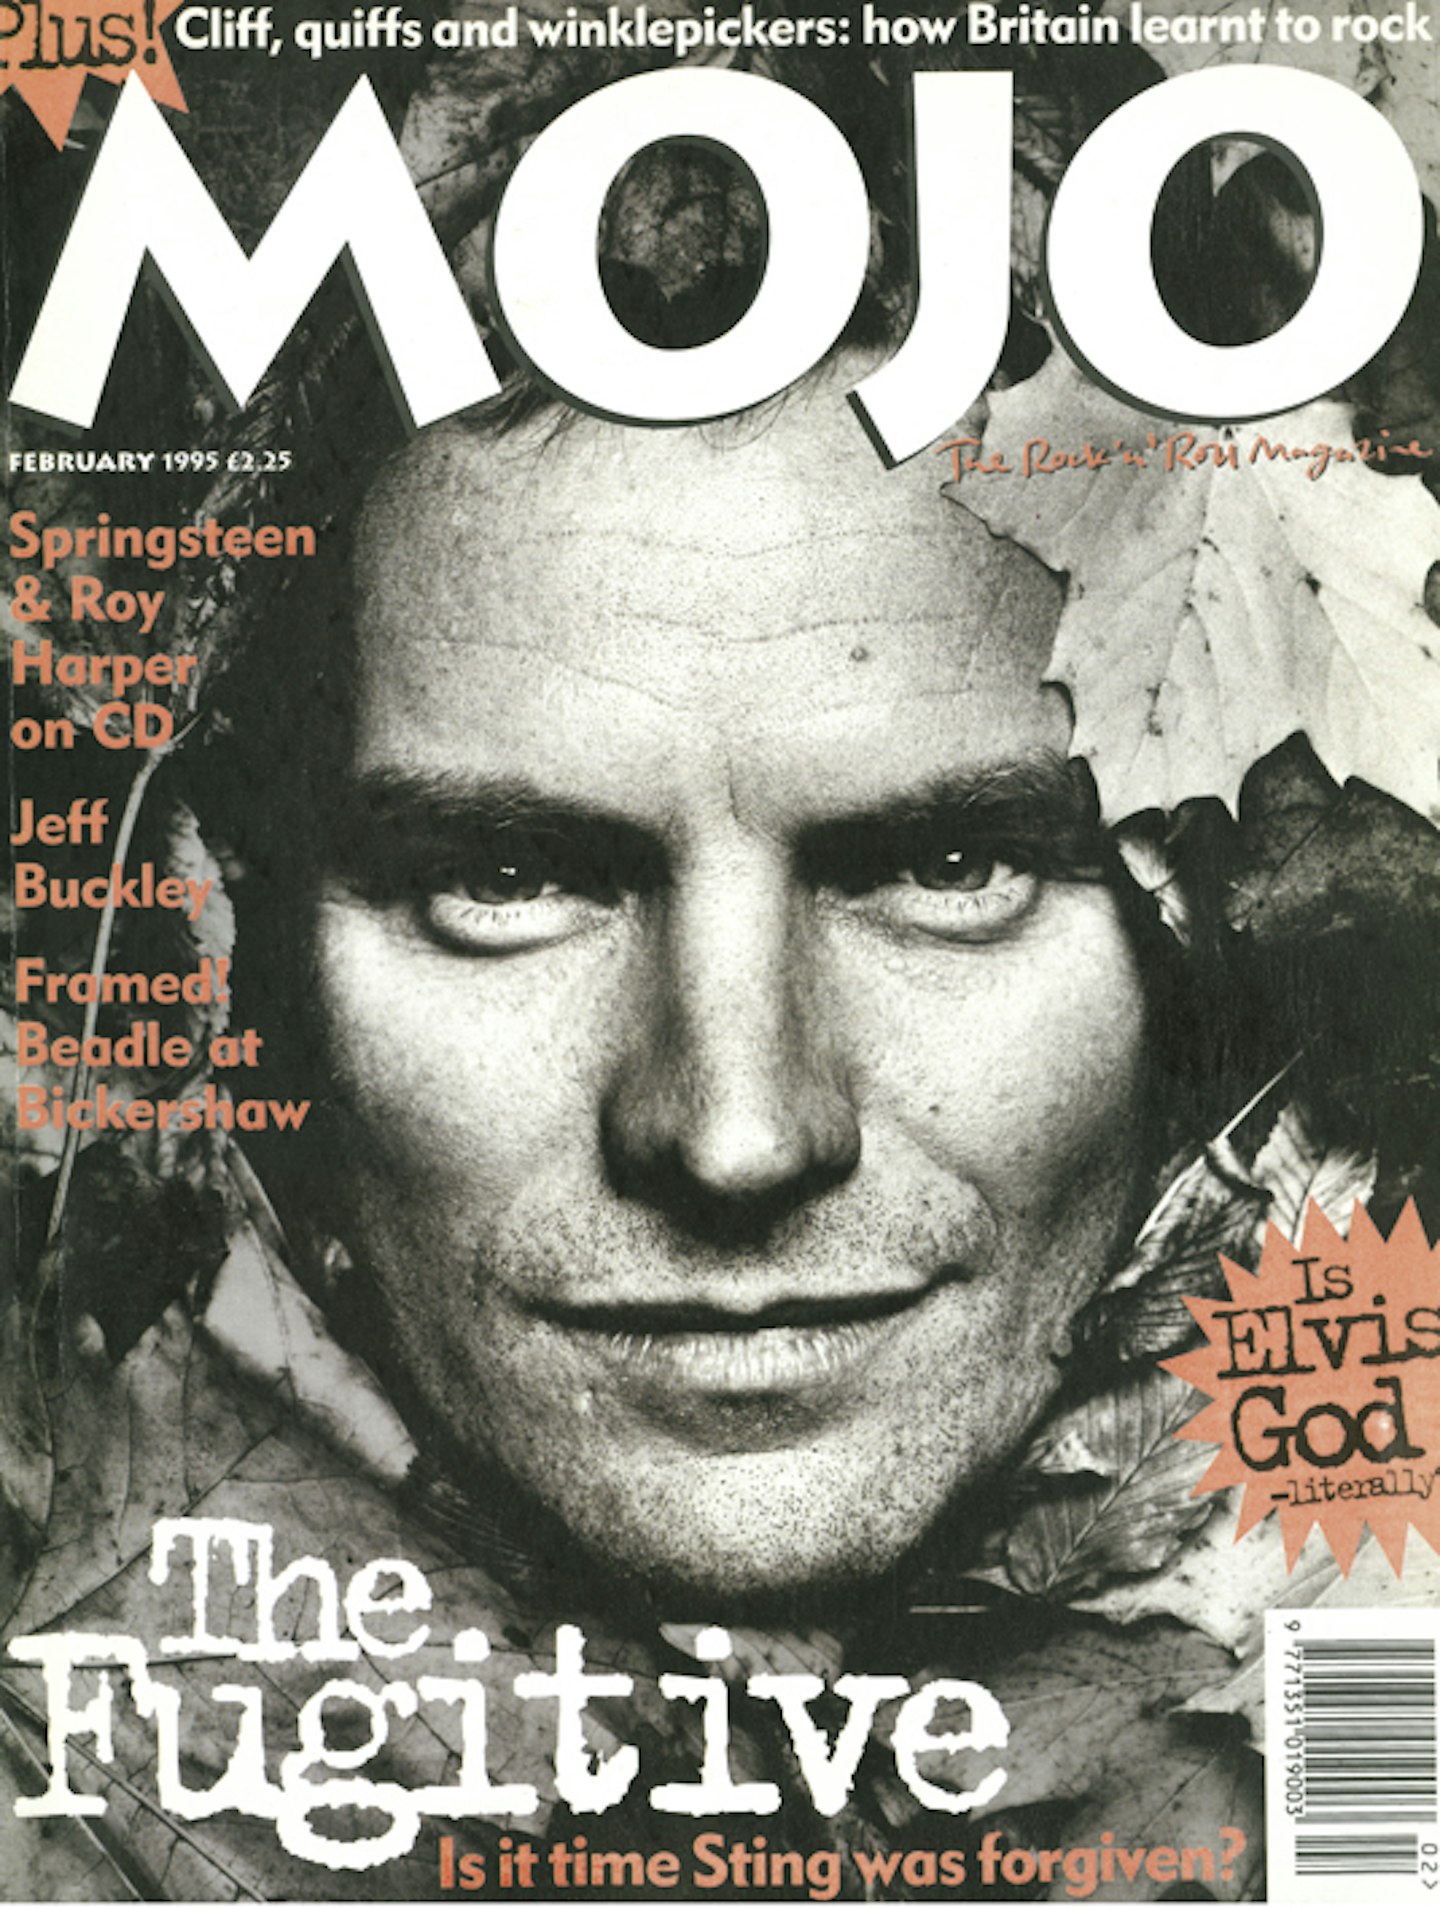 MOJO Issue 15 / February 1995